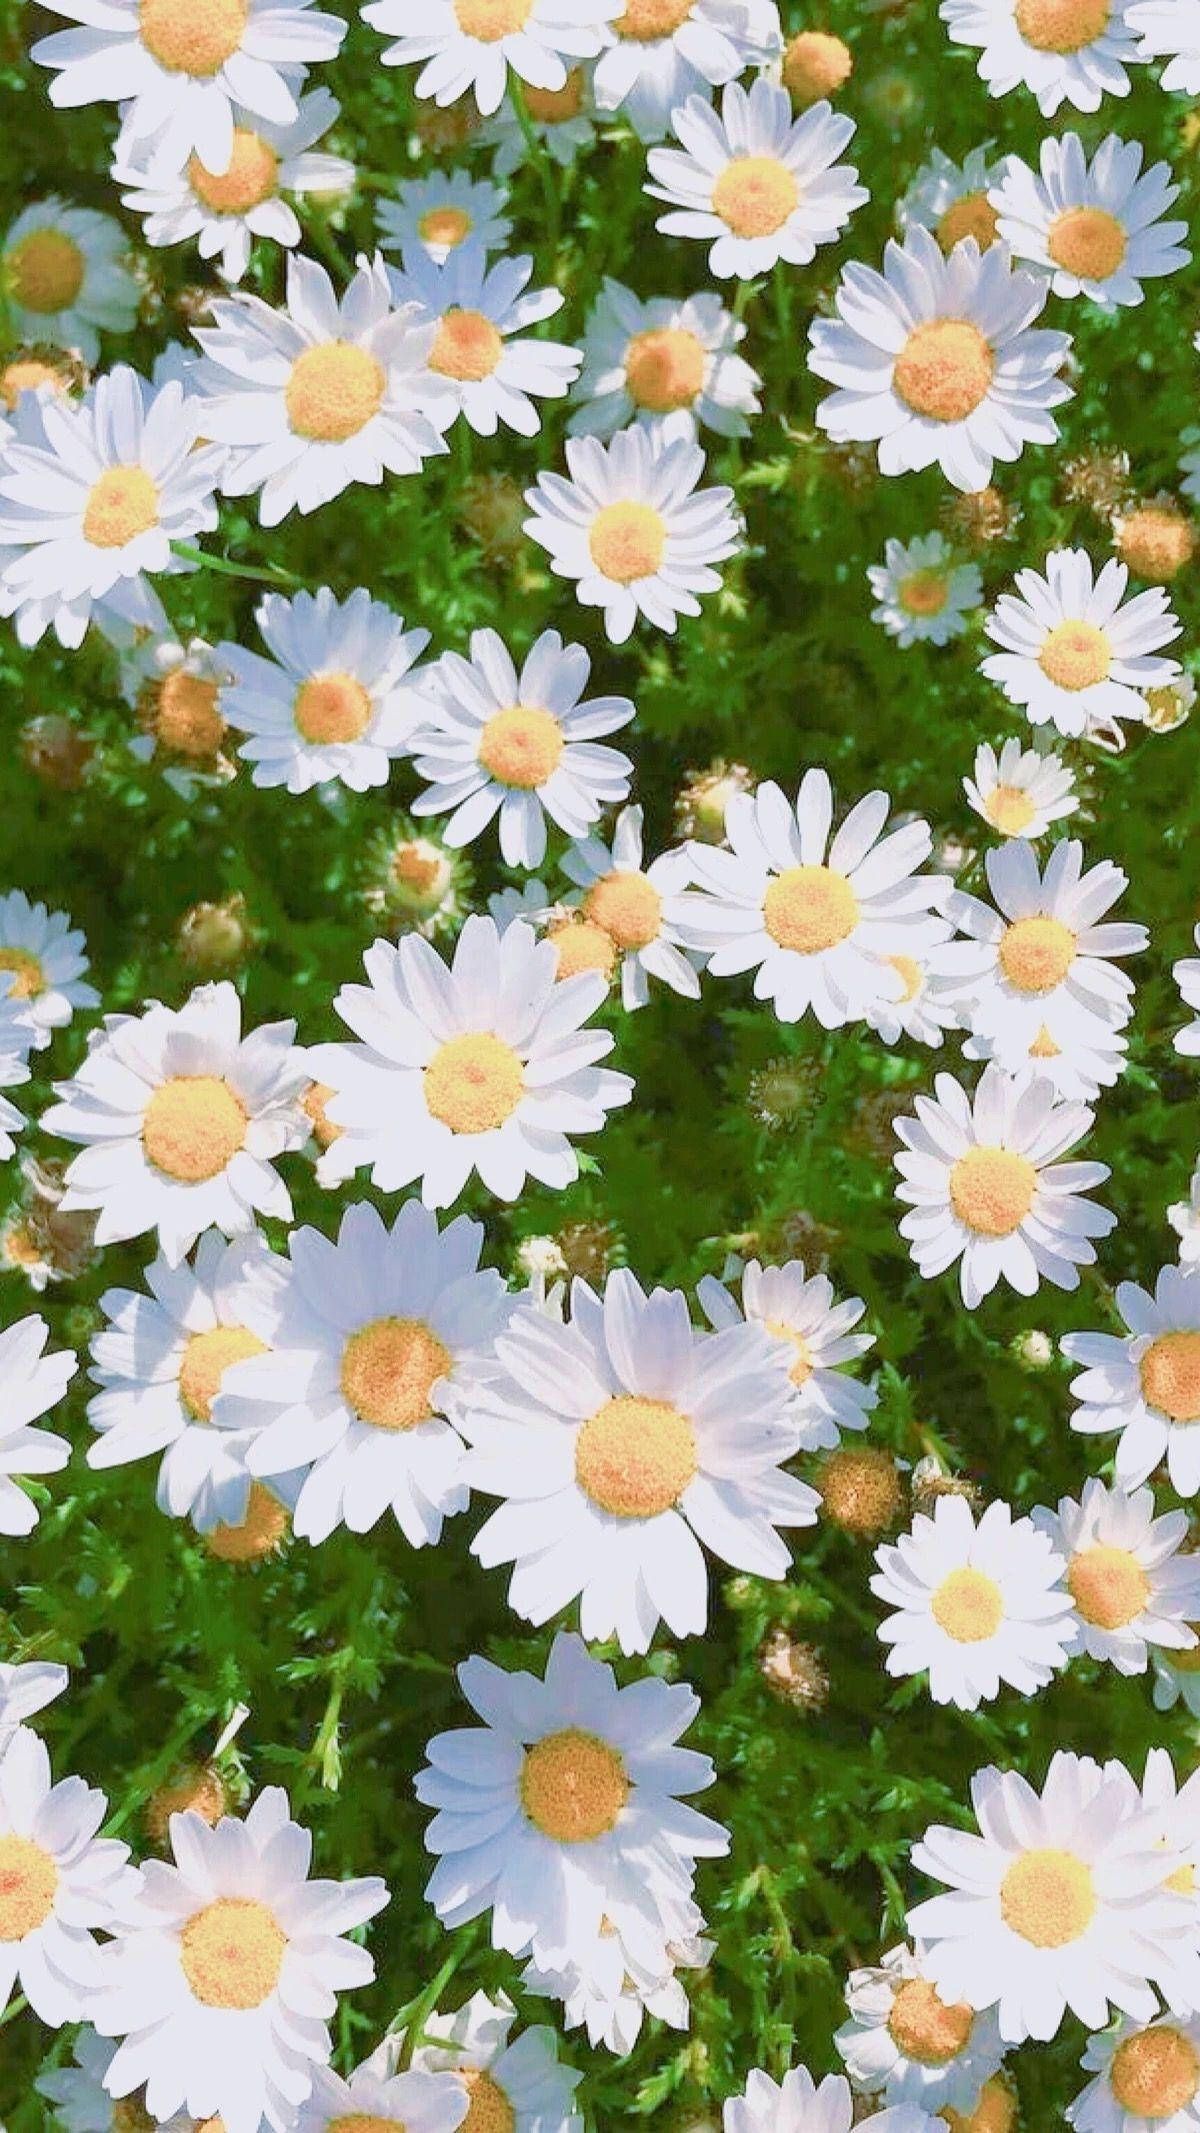 A close up of many white daisies - Bright, daisy